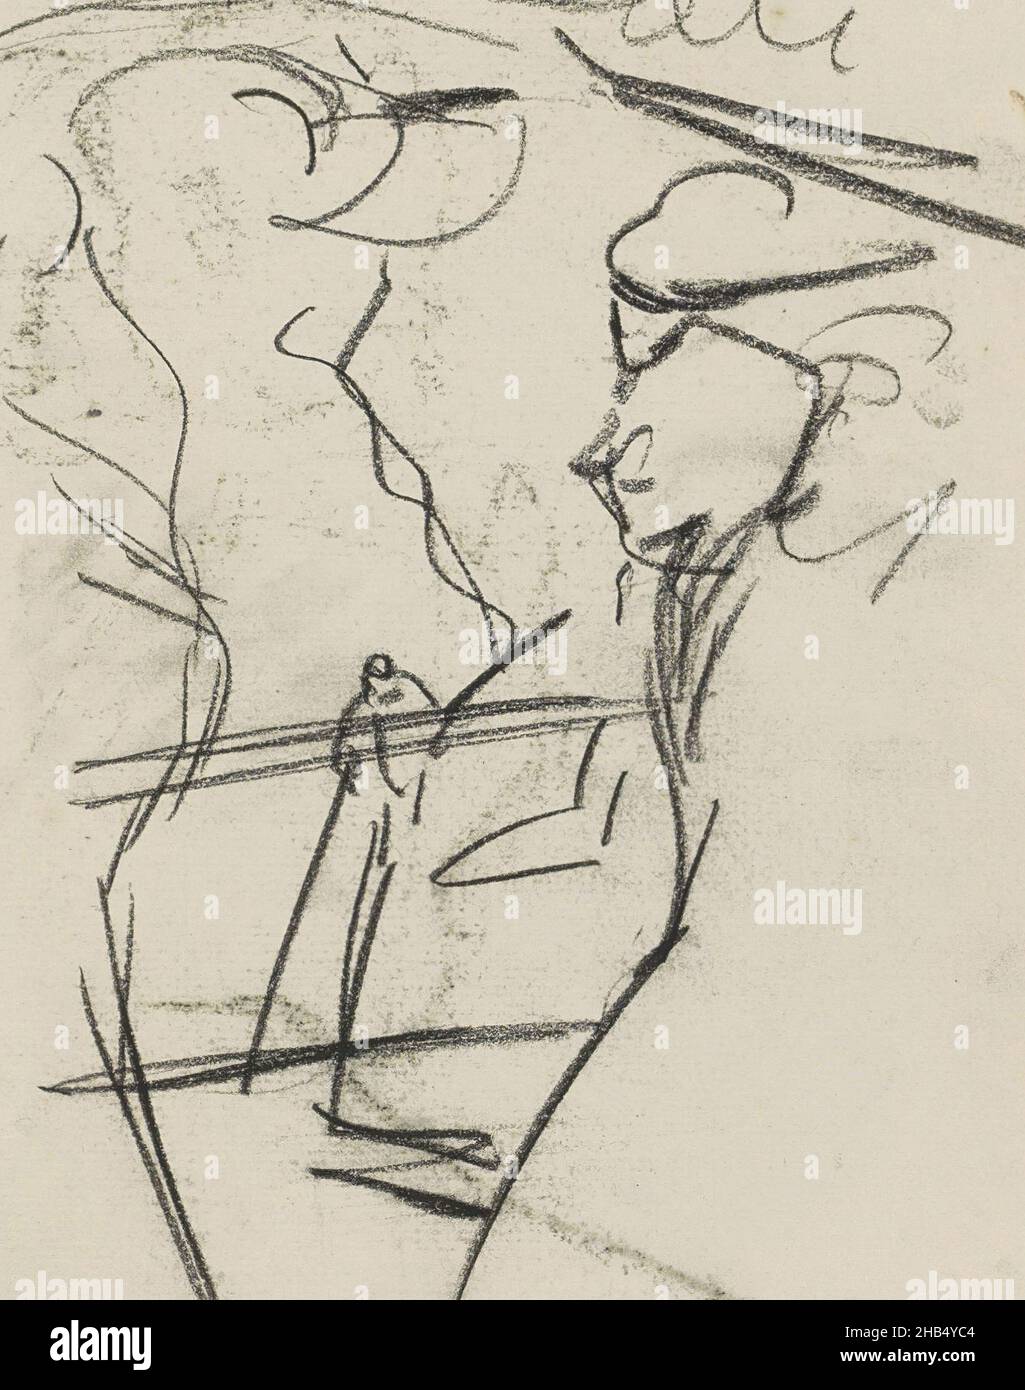 Pagina 30 e pagina 31 del libro di schizzo XXXII con 92 pagine., Gruppo donne, disegnatore: Isaac Israels, Amsterdam, c. 1886 - c. 1903 Isacco Israel, c. 1886 - c. 1903 Foto Stock